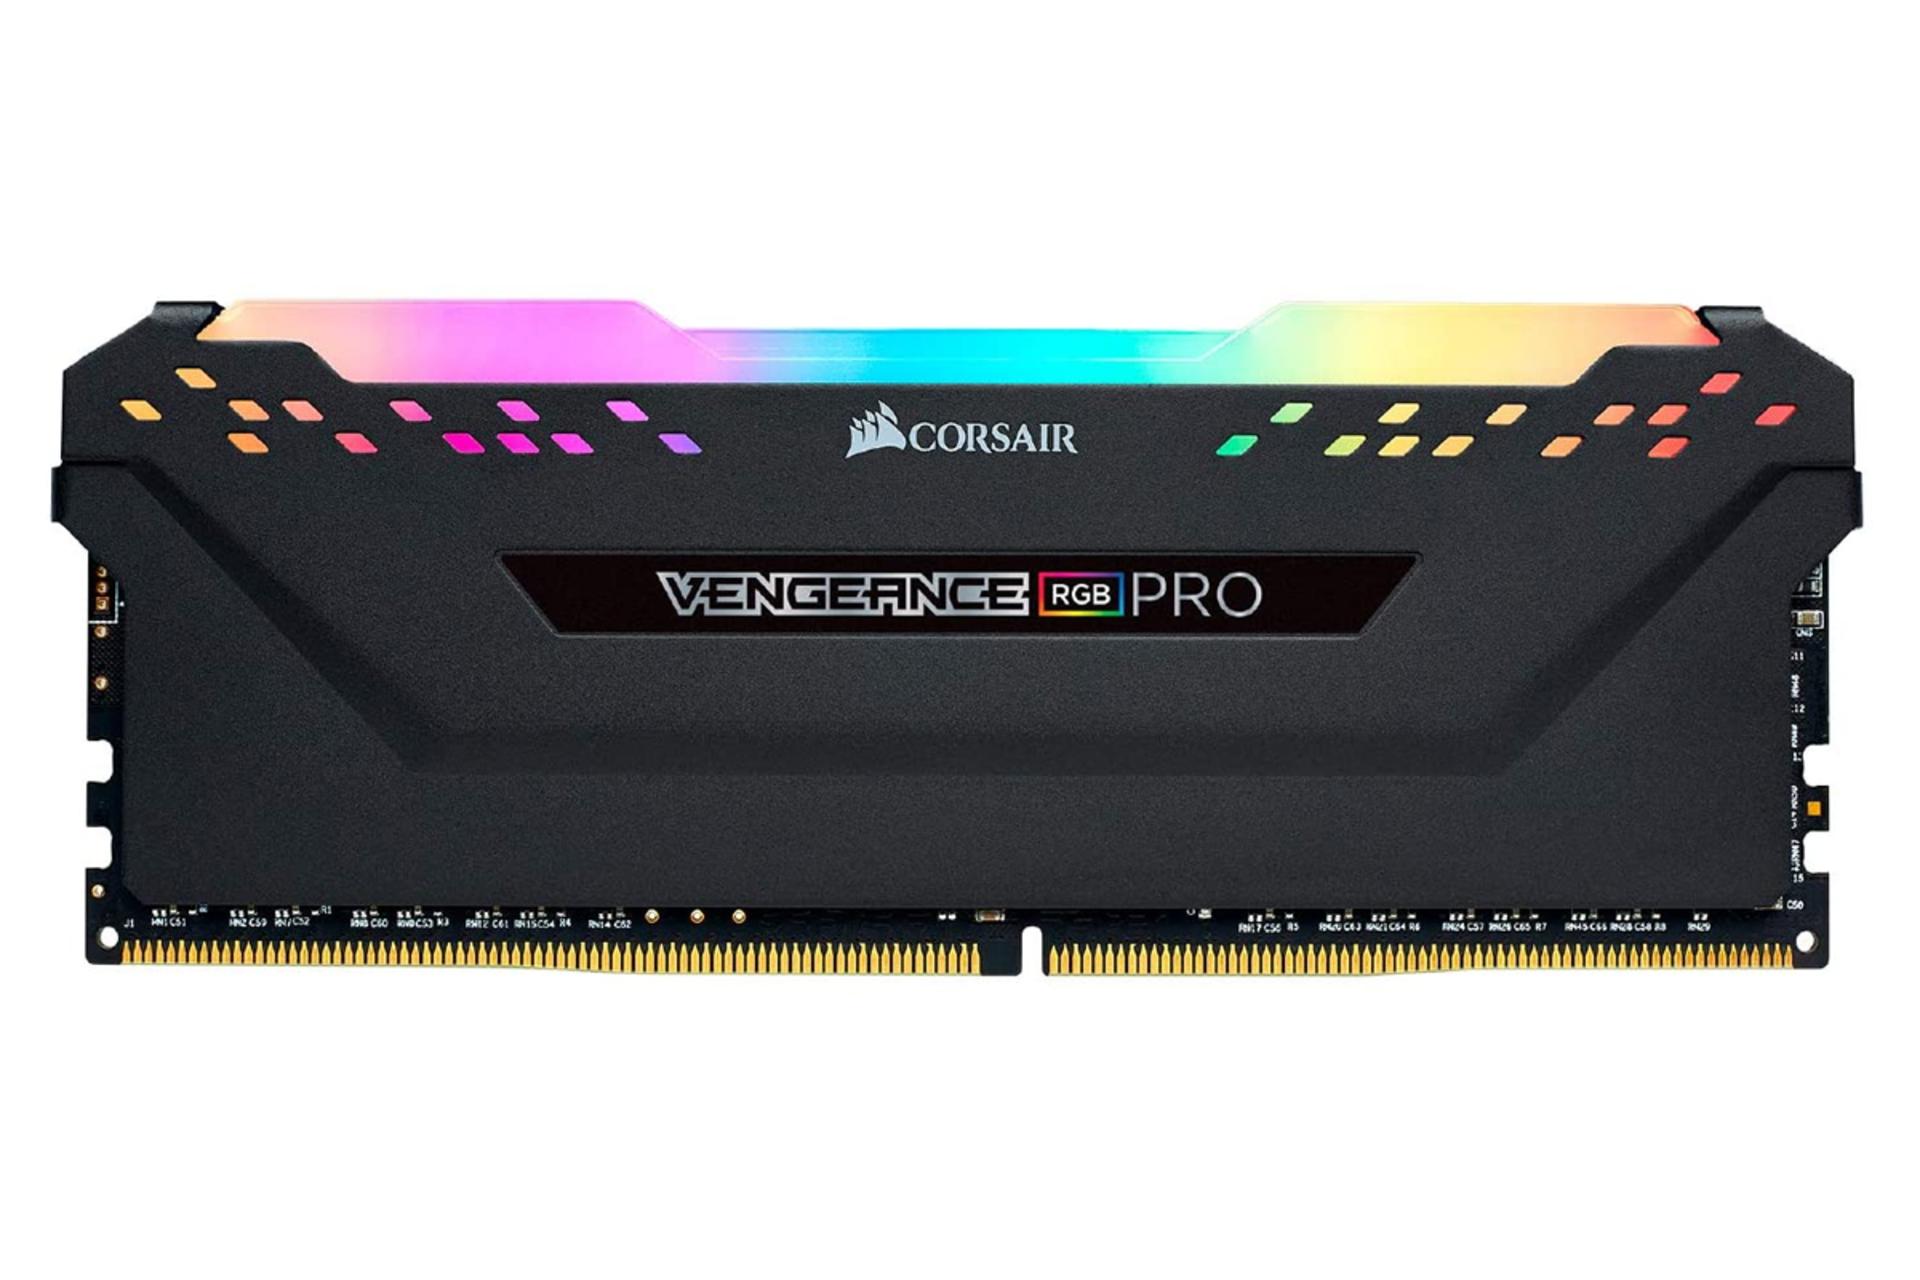 نمای جلو رم کورسیر VENGEANCE RGB PRO ظرفیت 8 گیگابایت  از نوع DDR4-3000